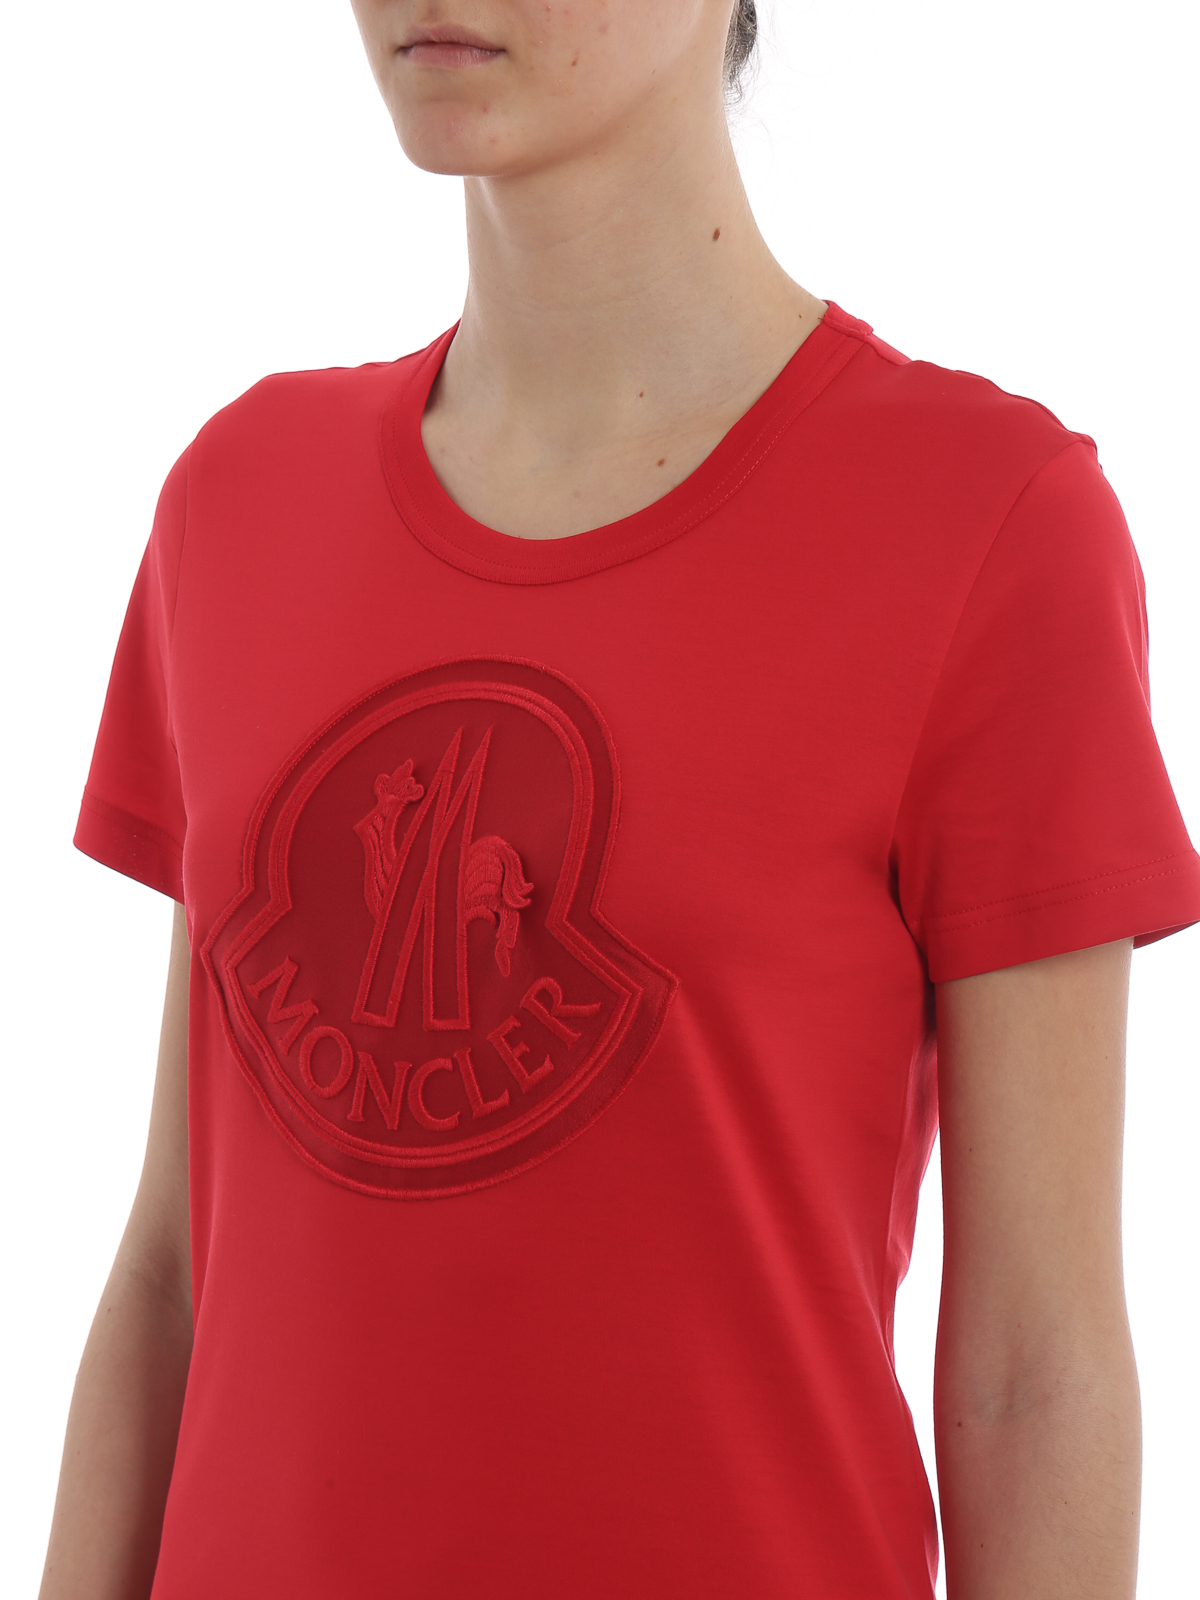 moncler t shirt red logo